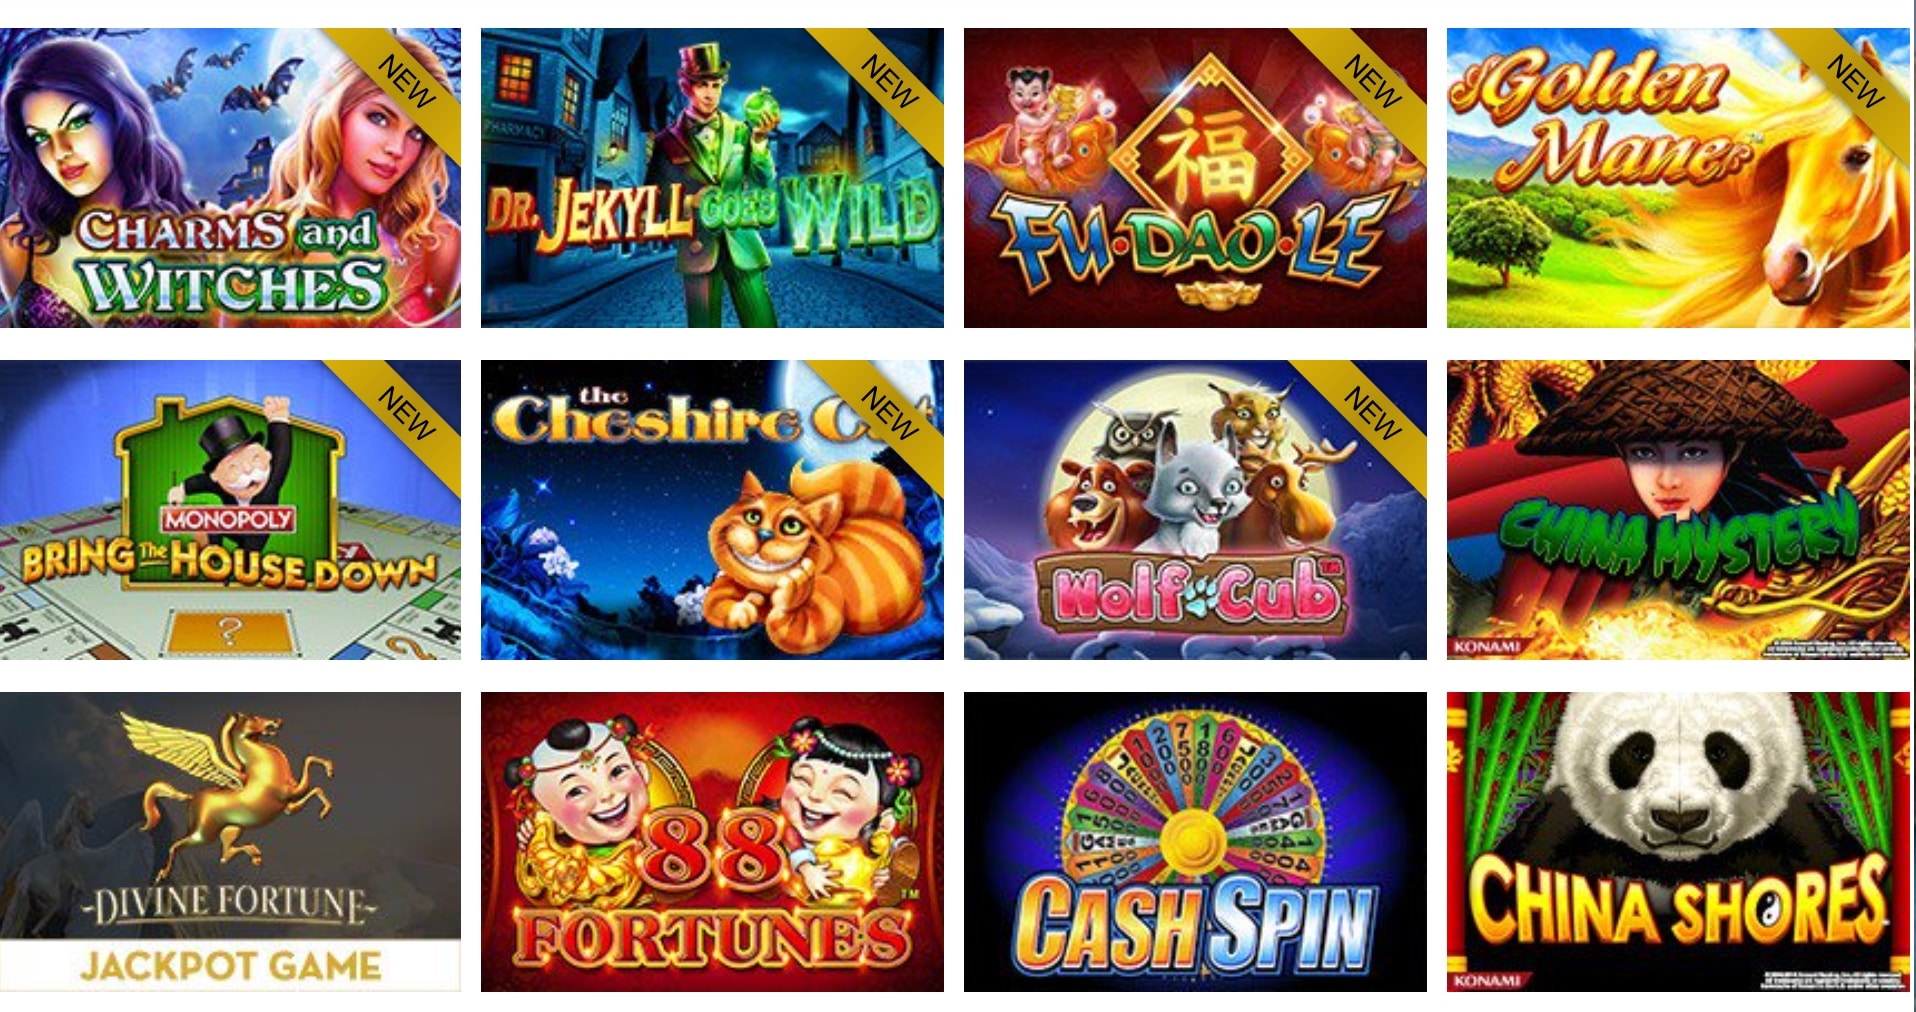 New online casino 20 free spins no deposit